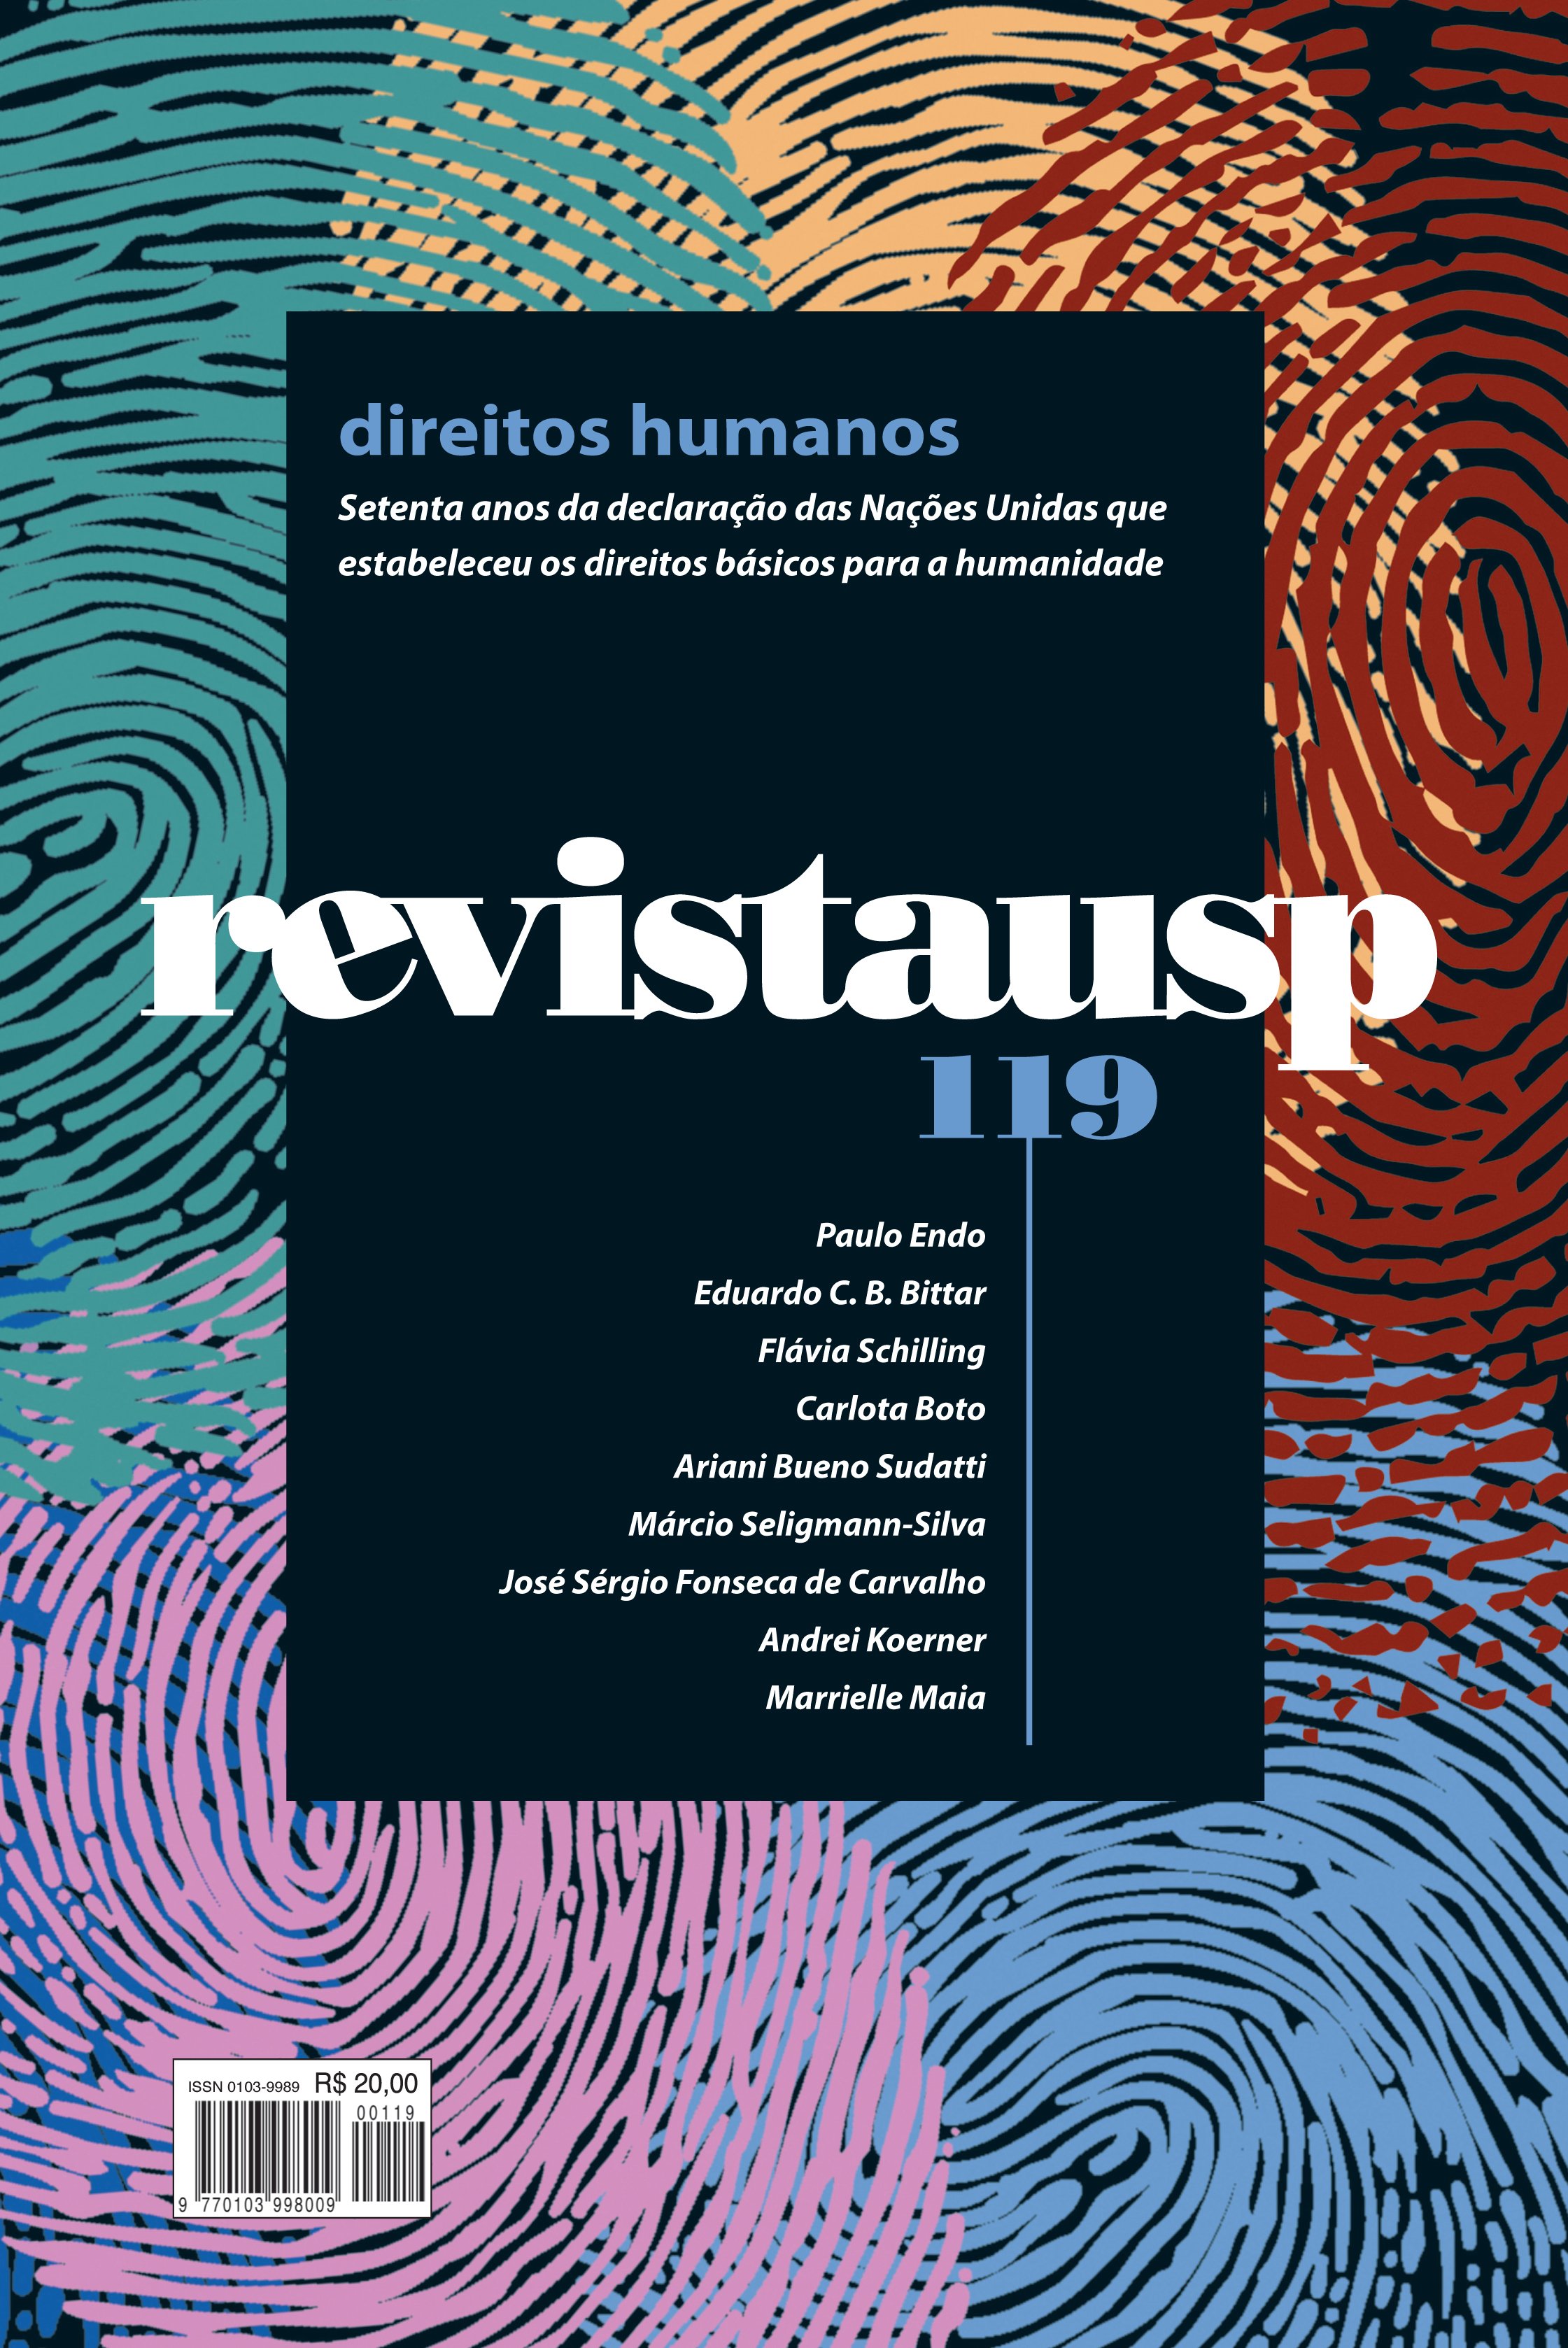 					View No. 119 (2018): DIREITOS HUMANOS
				